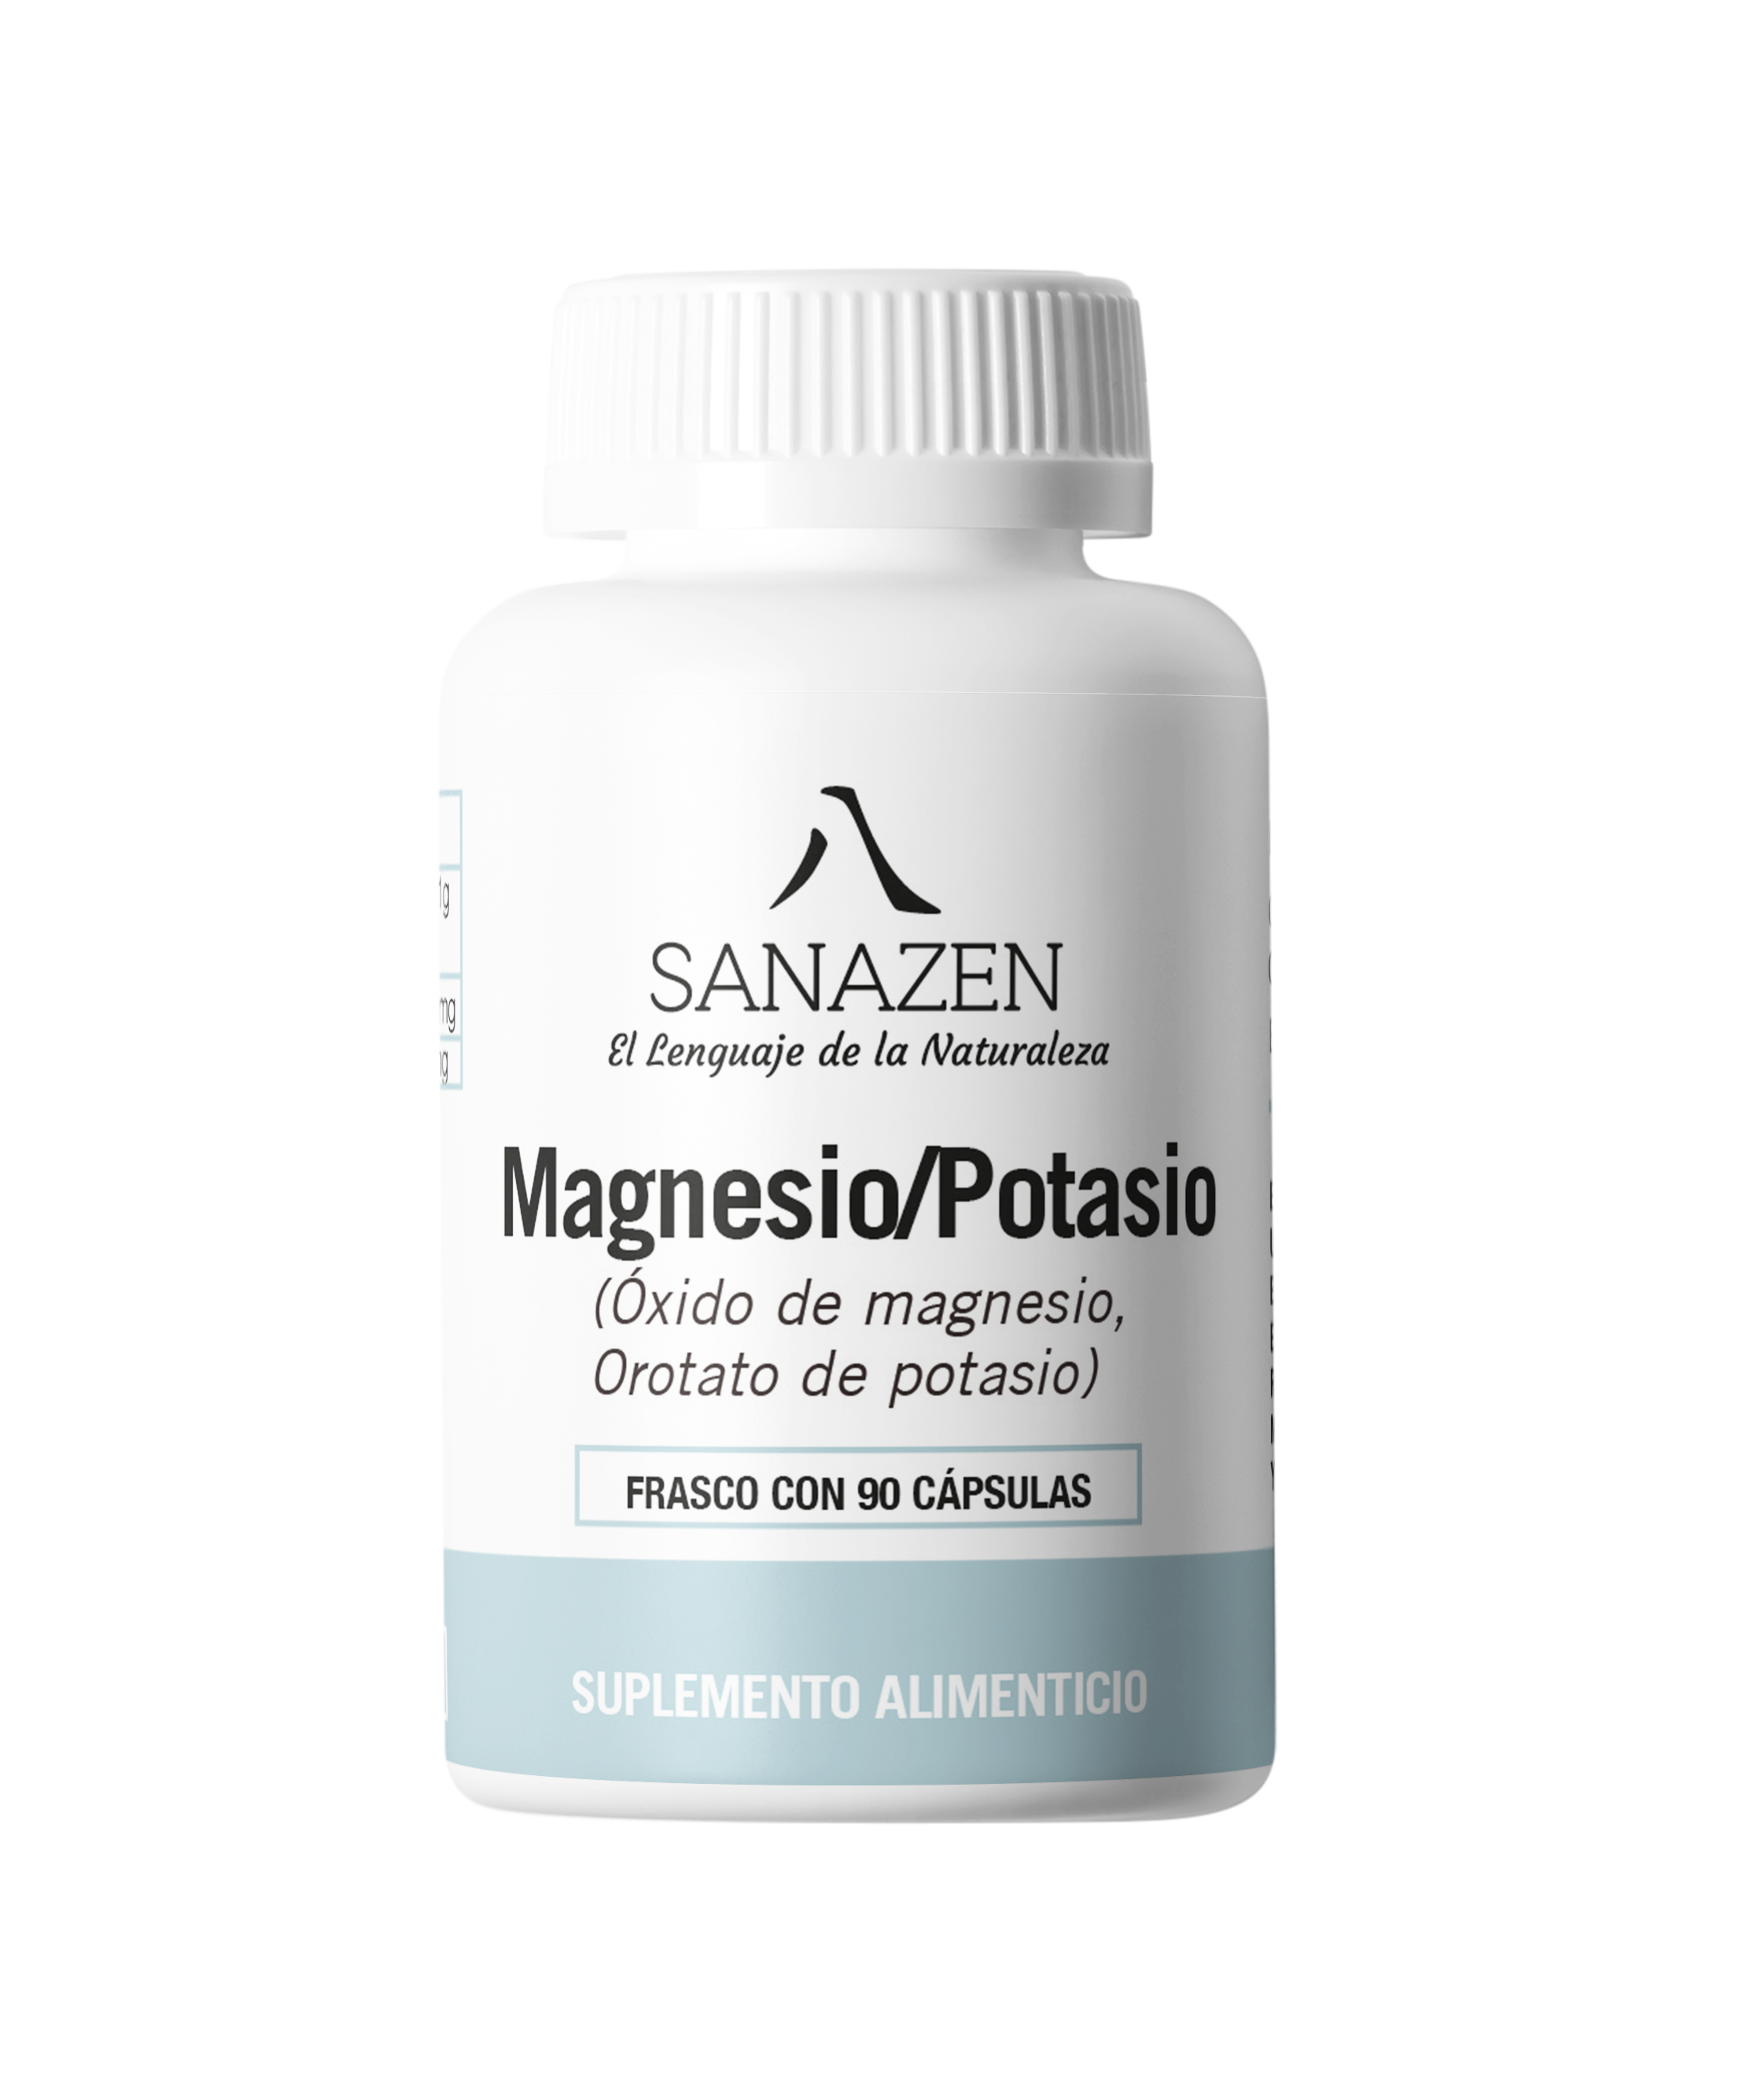 Magnesio/Potasio